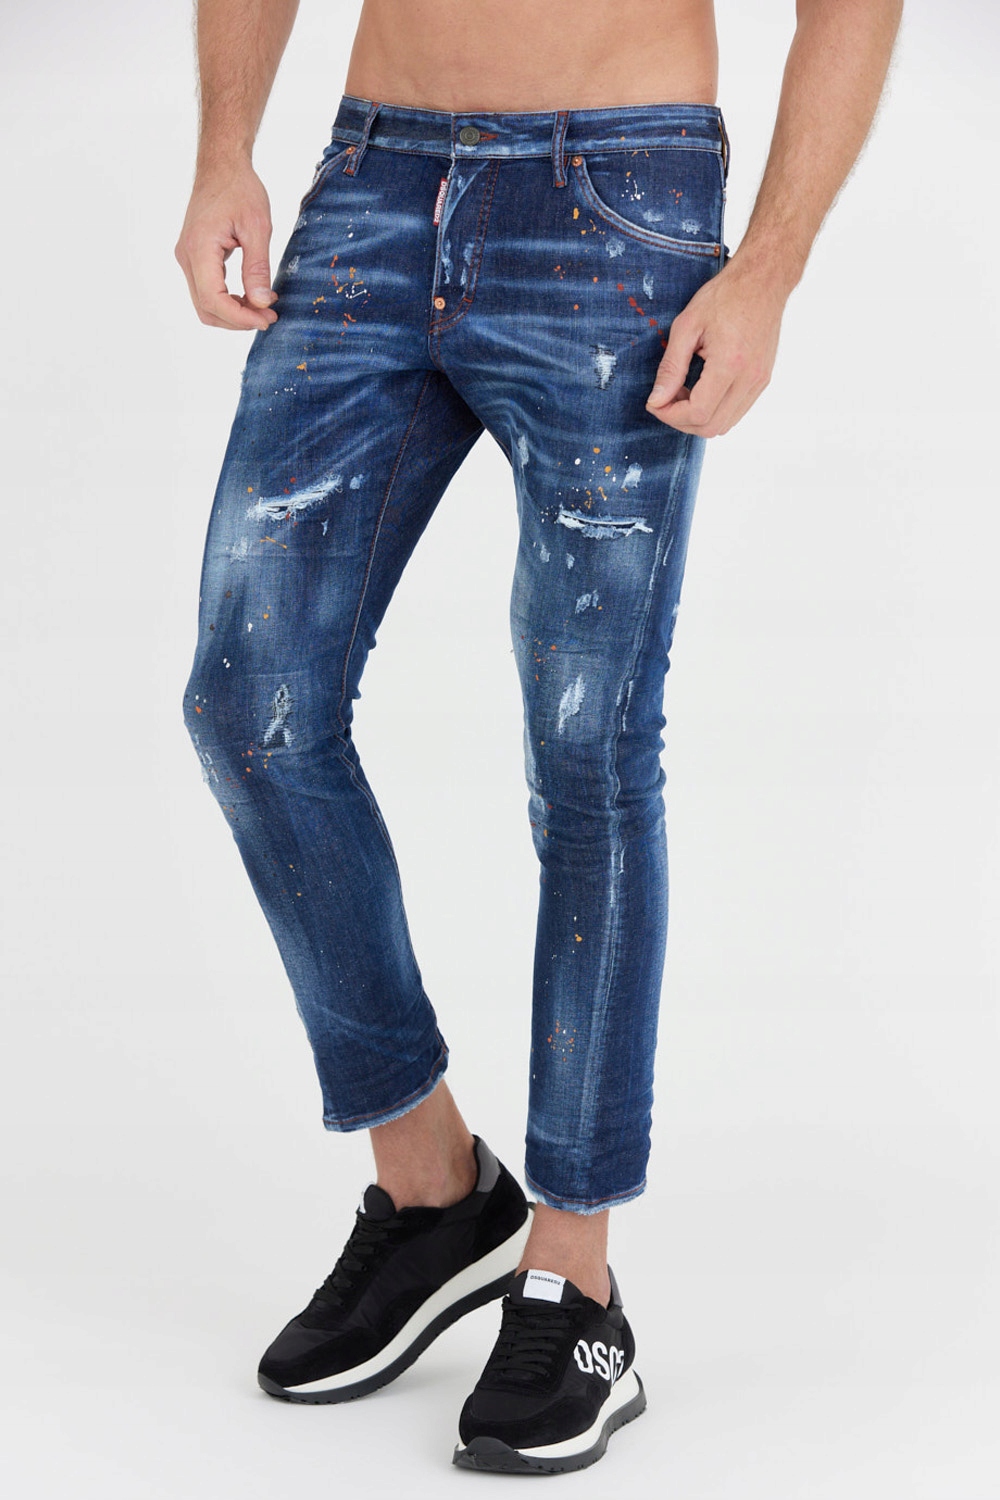 DSQUARED2 Granatowe jeansy SEXY TWIST JEAN 50 14435683297 - Allegro.pl